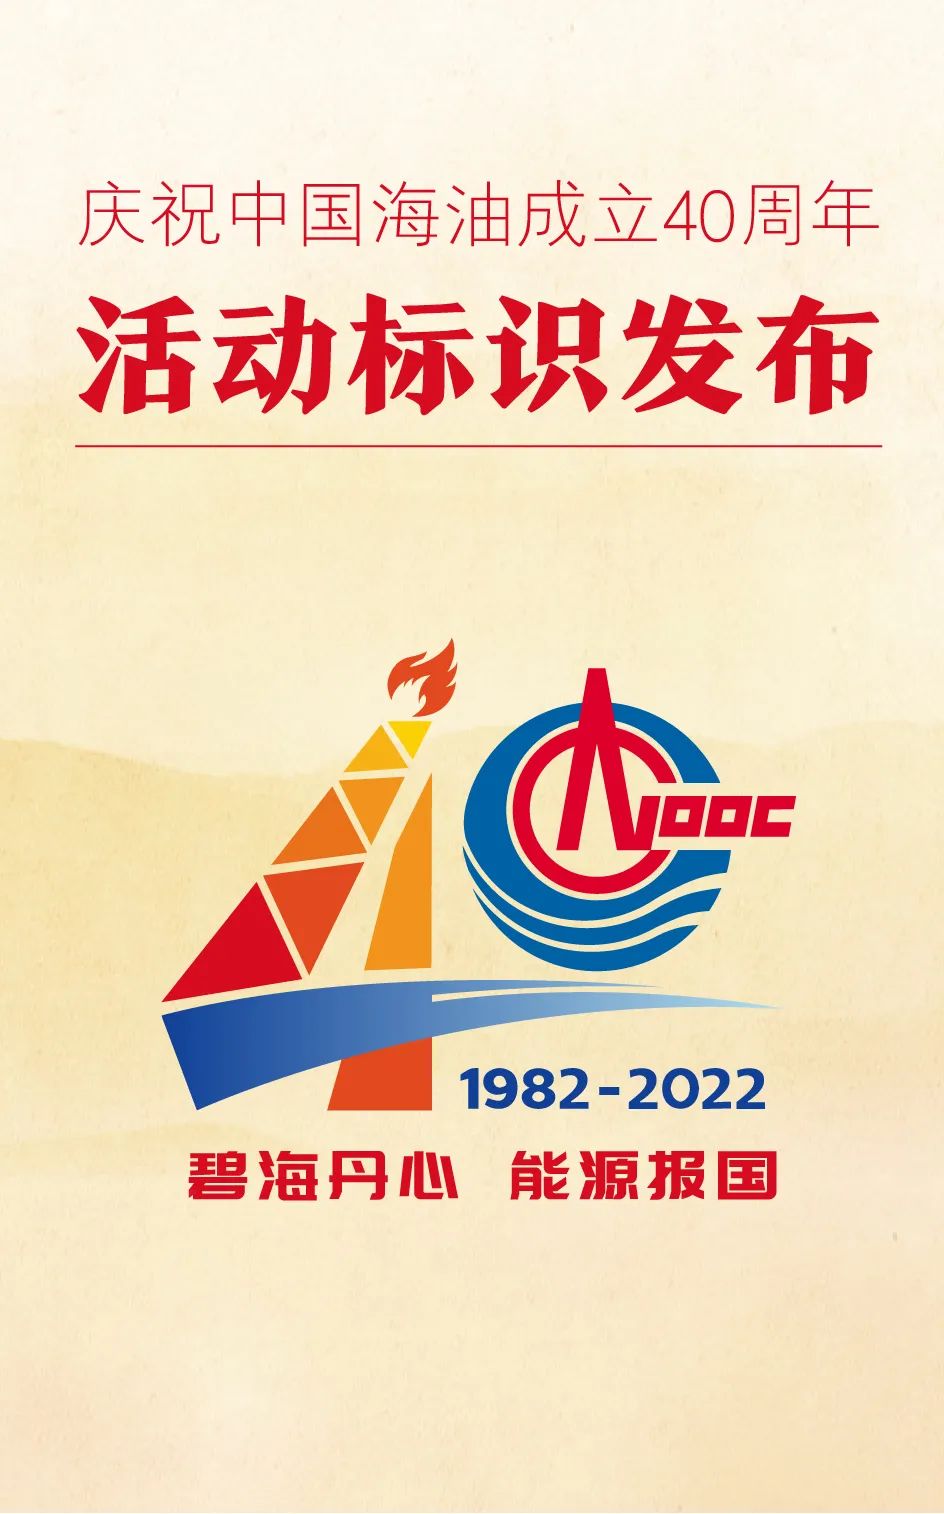 庆祝中国海油成立40周年活动标识正式发布